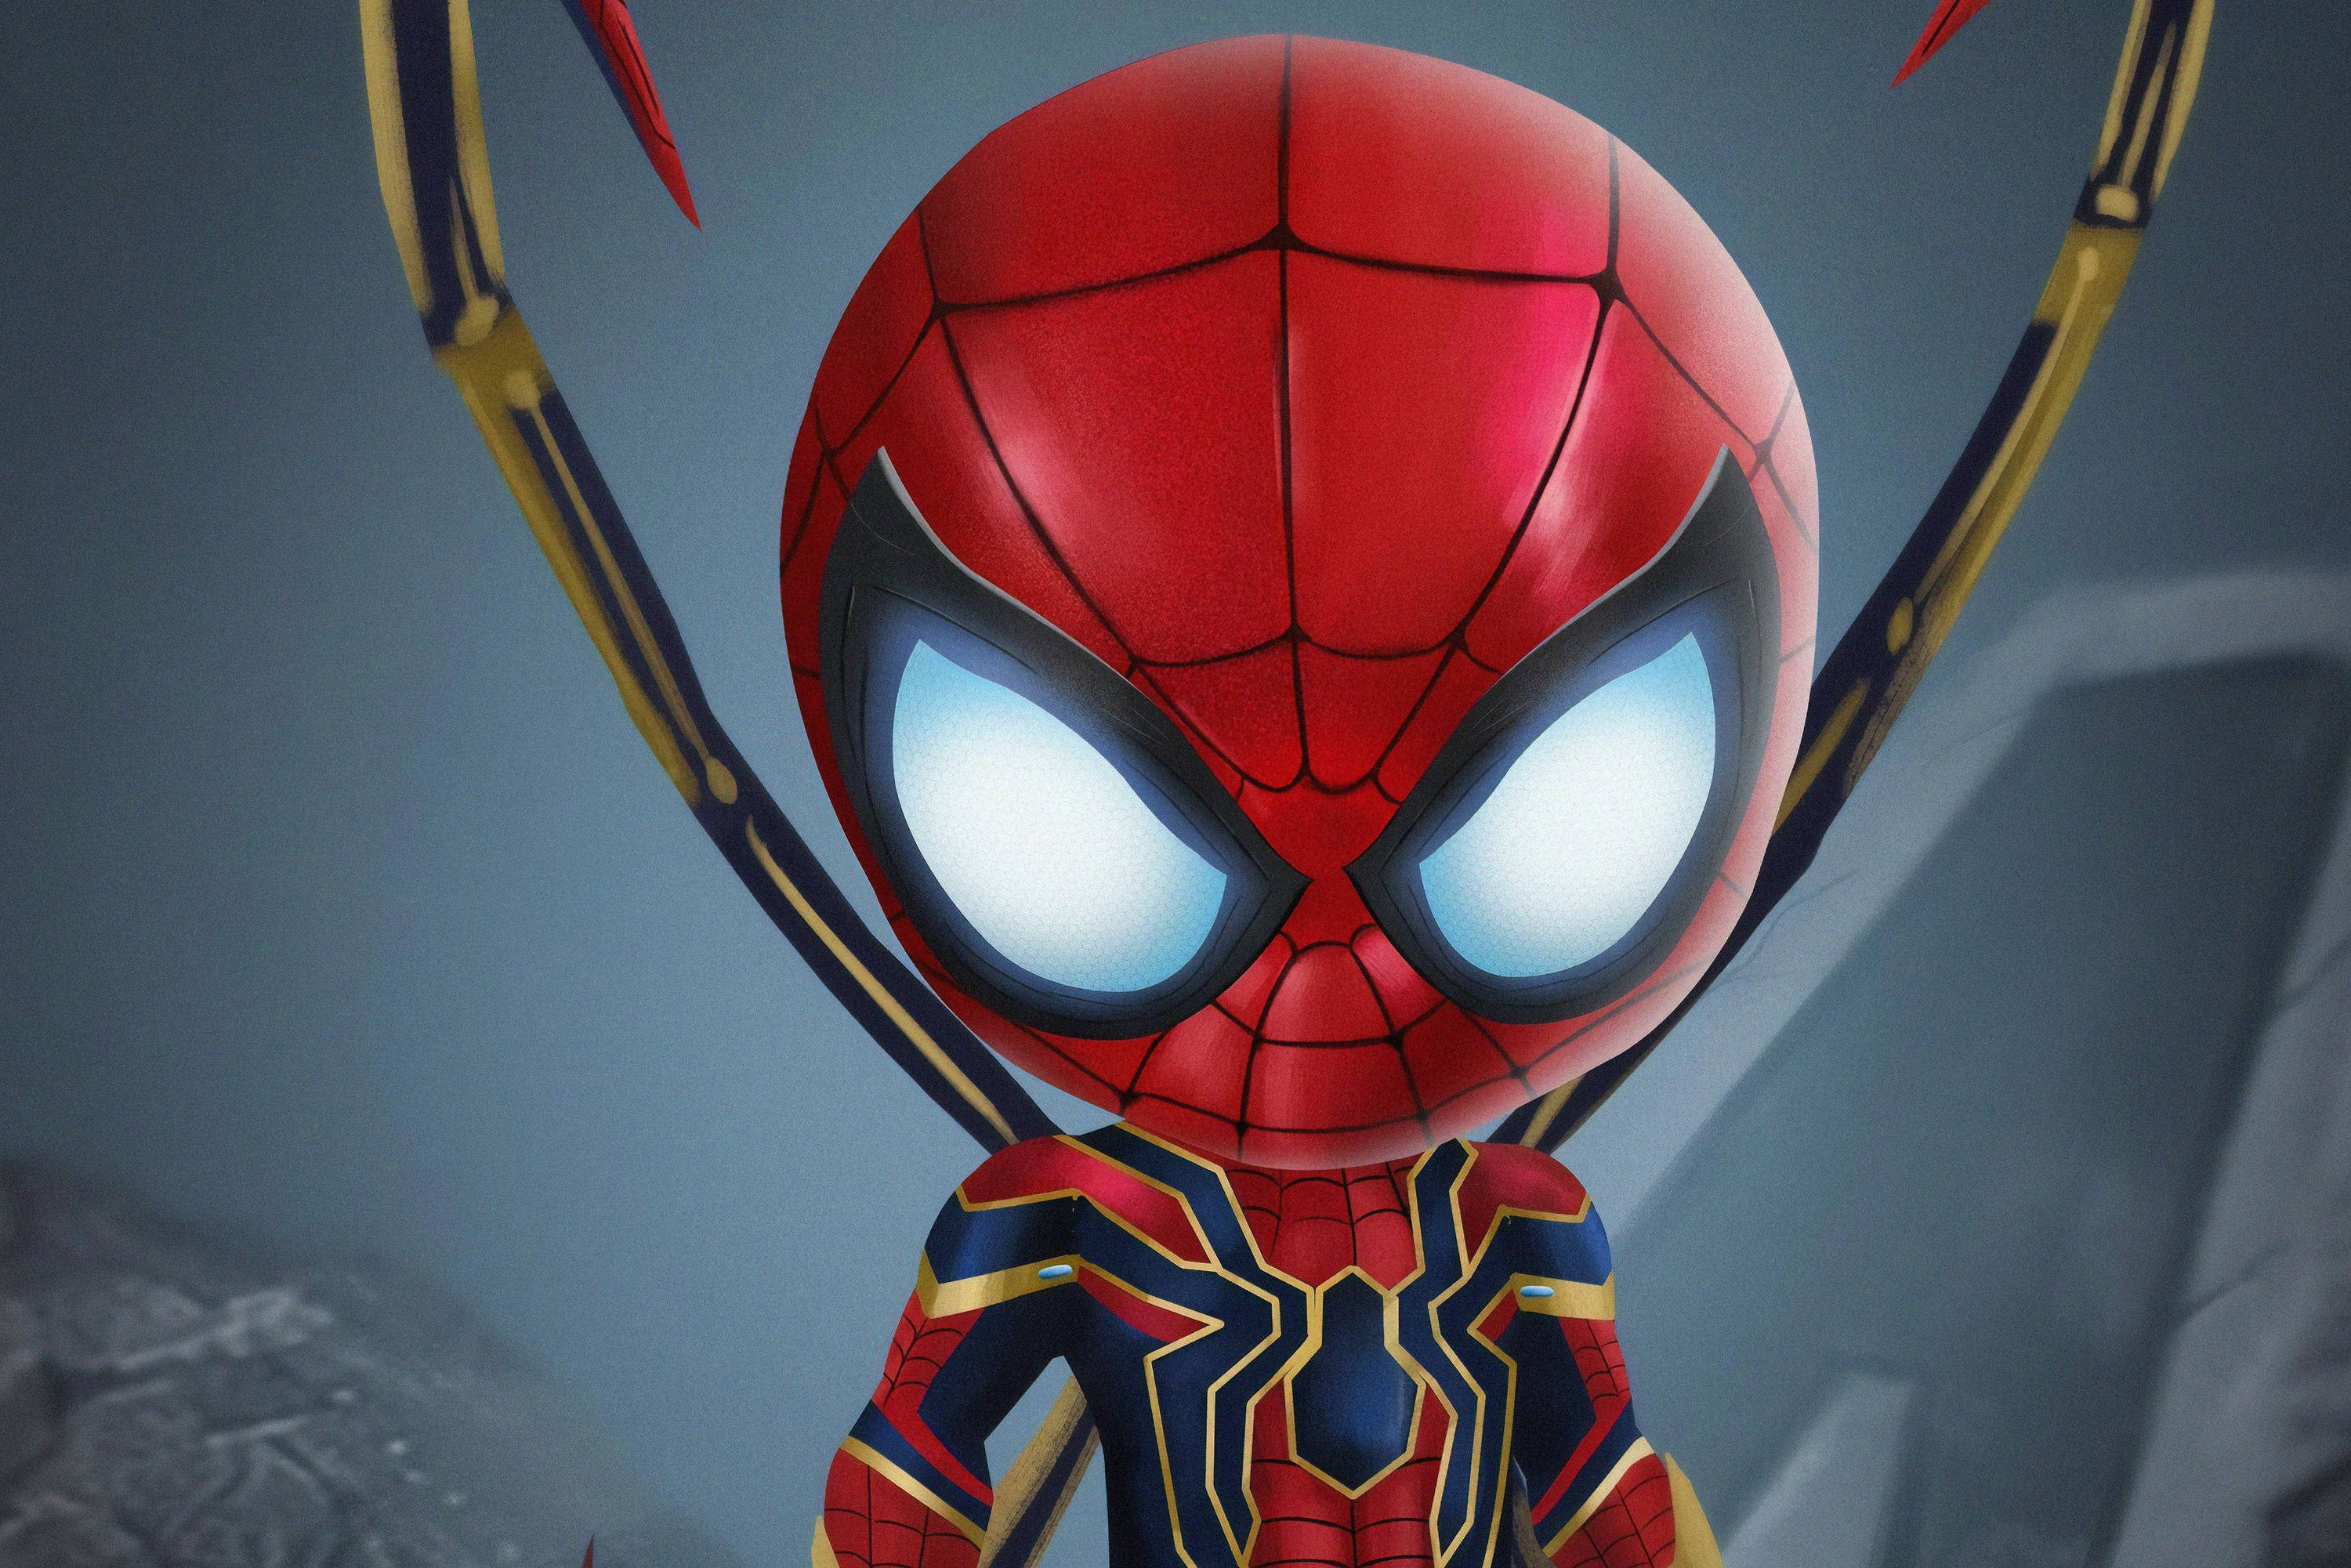 Iron Spider Spiderman Action Figure Background